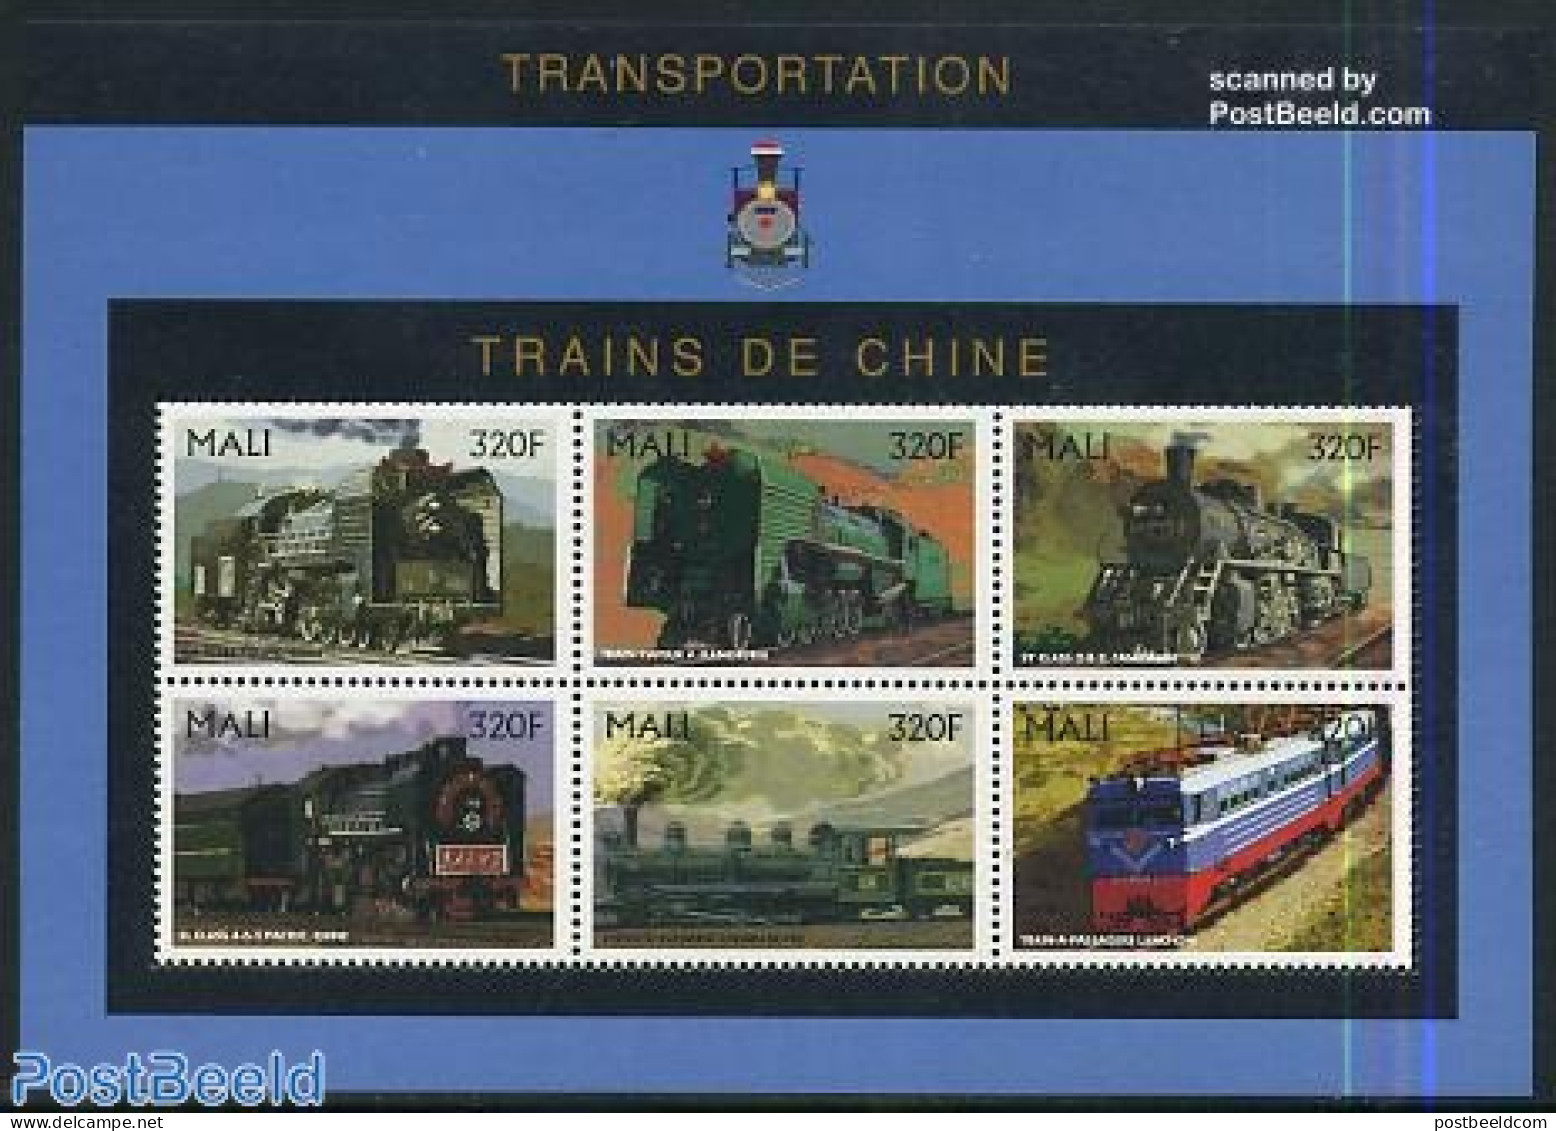 Mali 1996 Railways History 6v M/s (6x320f), Mint NH, Transport - Railways - Trains